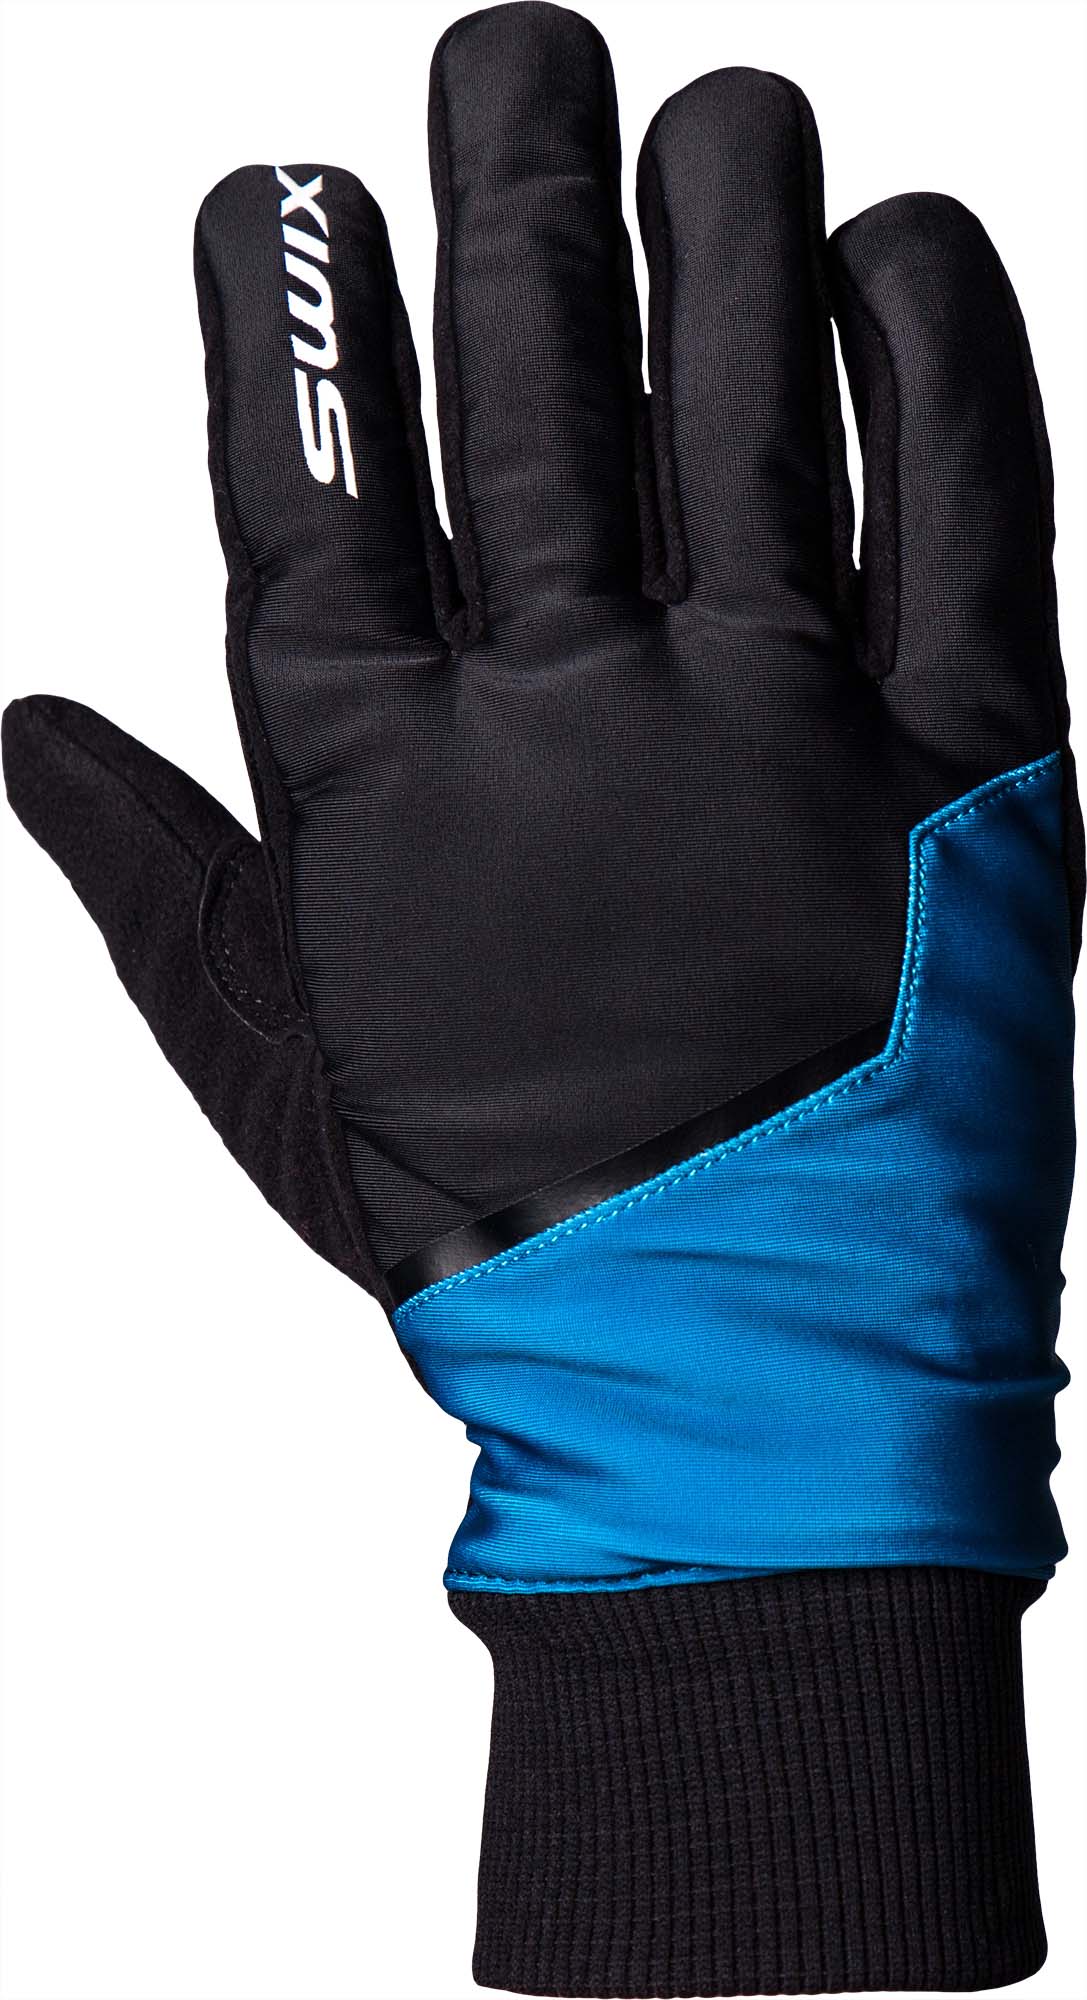 Men’s gloves